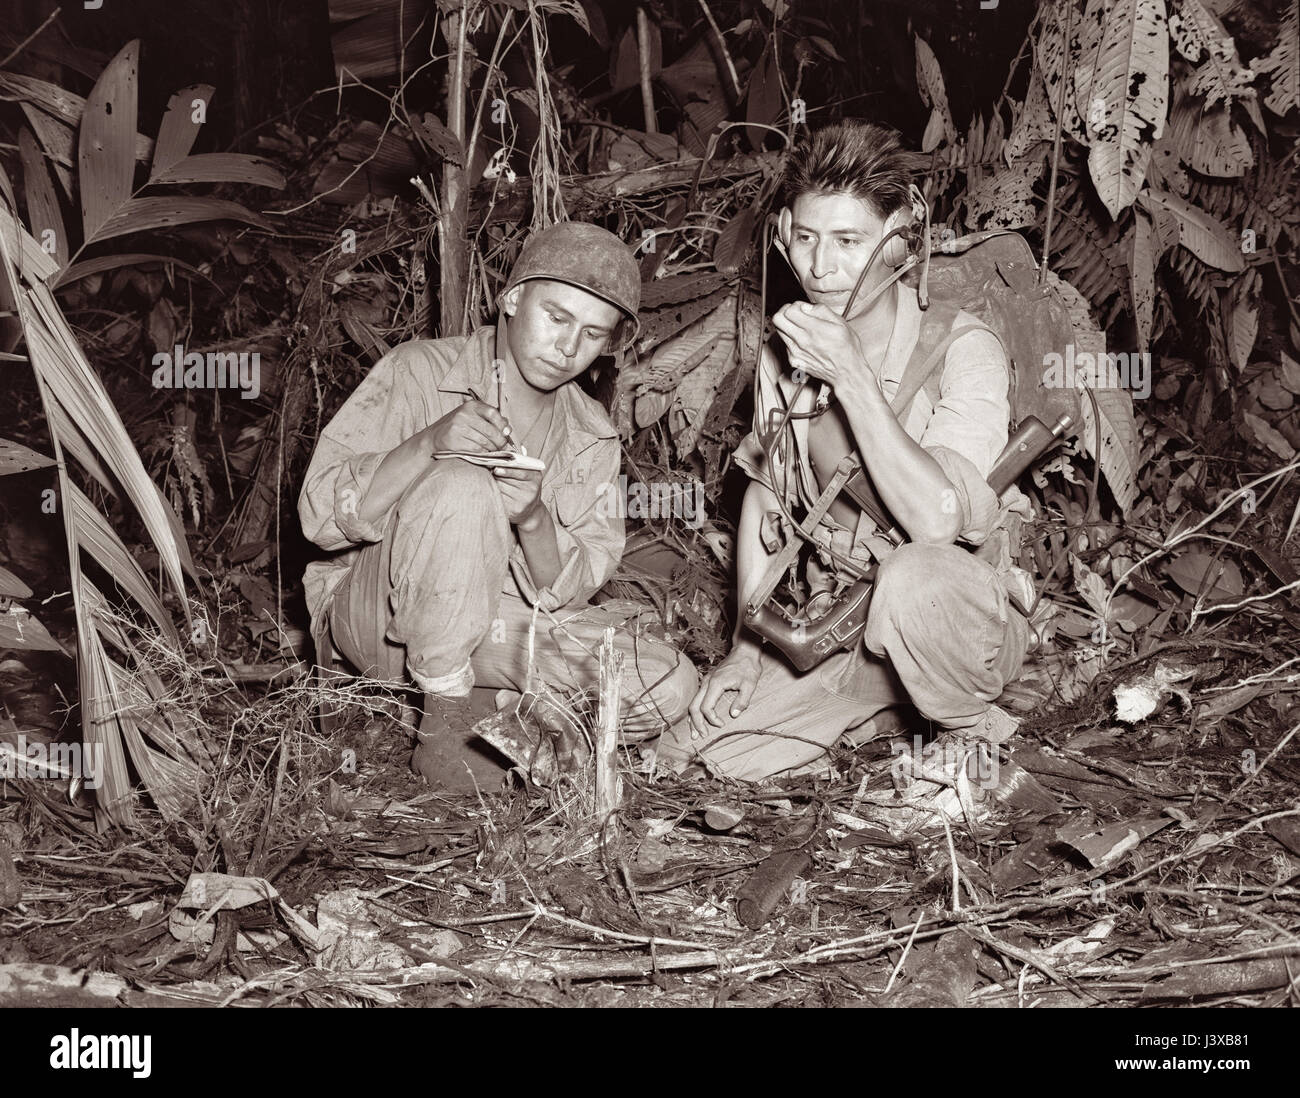 Howe Caverns à Bougainville en décembre 1943 au cours de la Seconde Guerre mondiale. Le Caporal Henry Cuire Jr (à gauche) et le soldat de première classe George H Kirk (à droite), servant avec une unité de signal maritime, l'exploitation d'un poste radio portatif dans une clairière qu'ils ont piraté dans la jungle dense près derrière les lignes de front. Banque D'Images